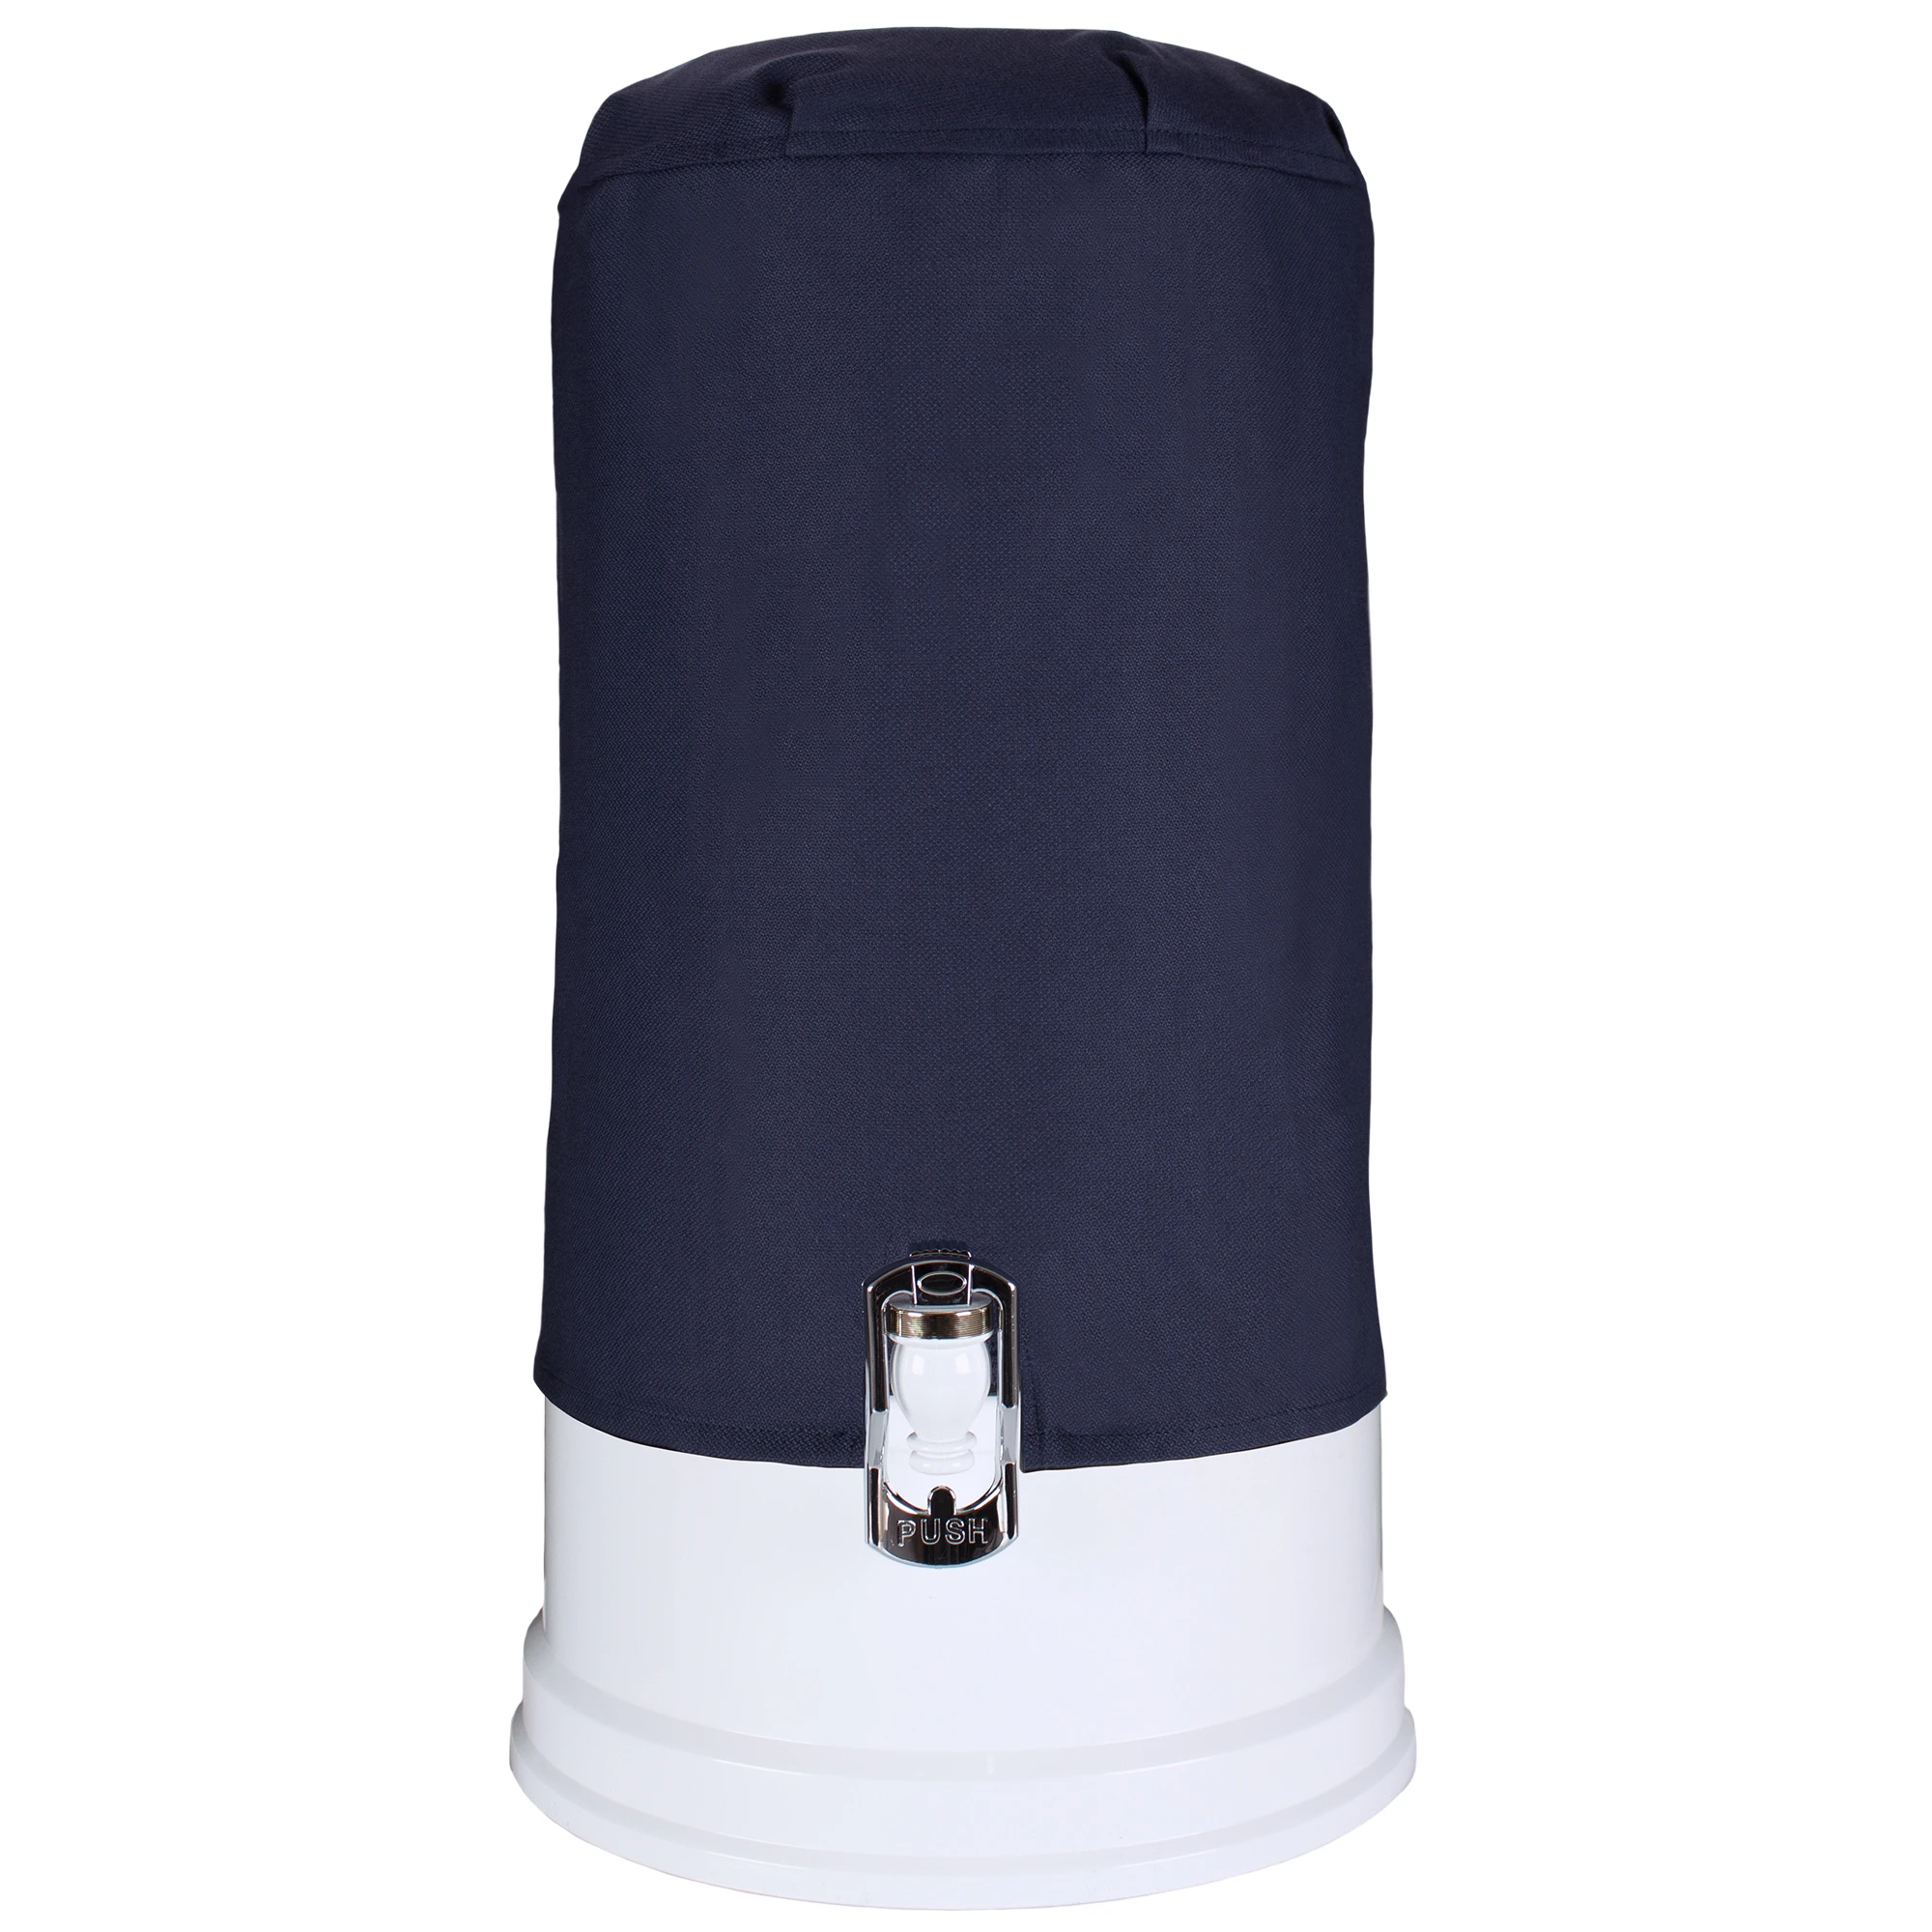 Zu sehen ist der Acala Stand Wasserfilter Smart mit Sockel und Kunststoff Wasserhahn in weiß vor weißem Hintergrund. Der Filter ist bis zum Sockel komplett mit einem dunkelblauen Lichtschutzüberzug abgedeckt. 